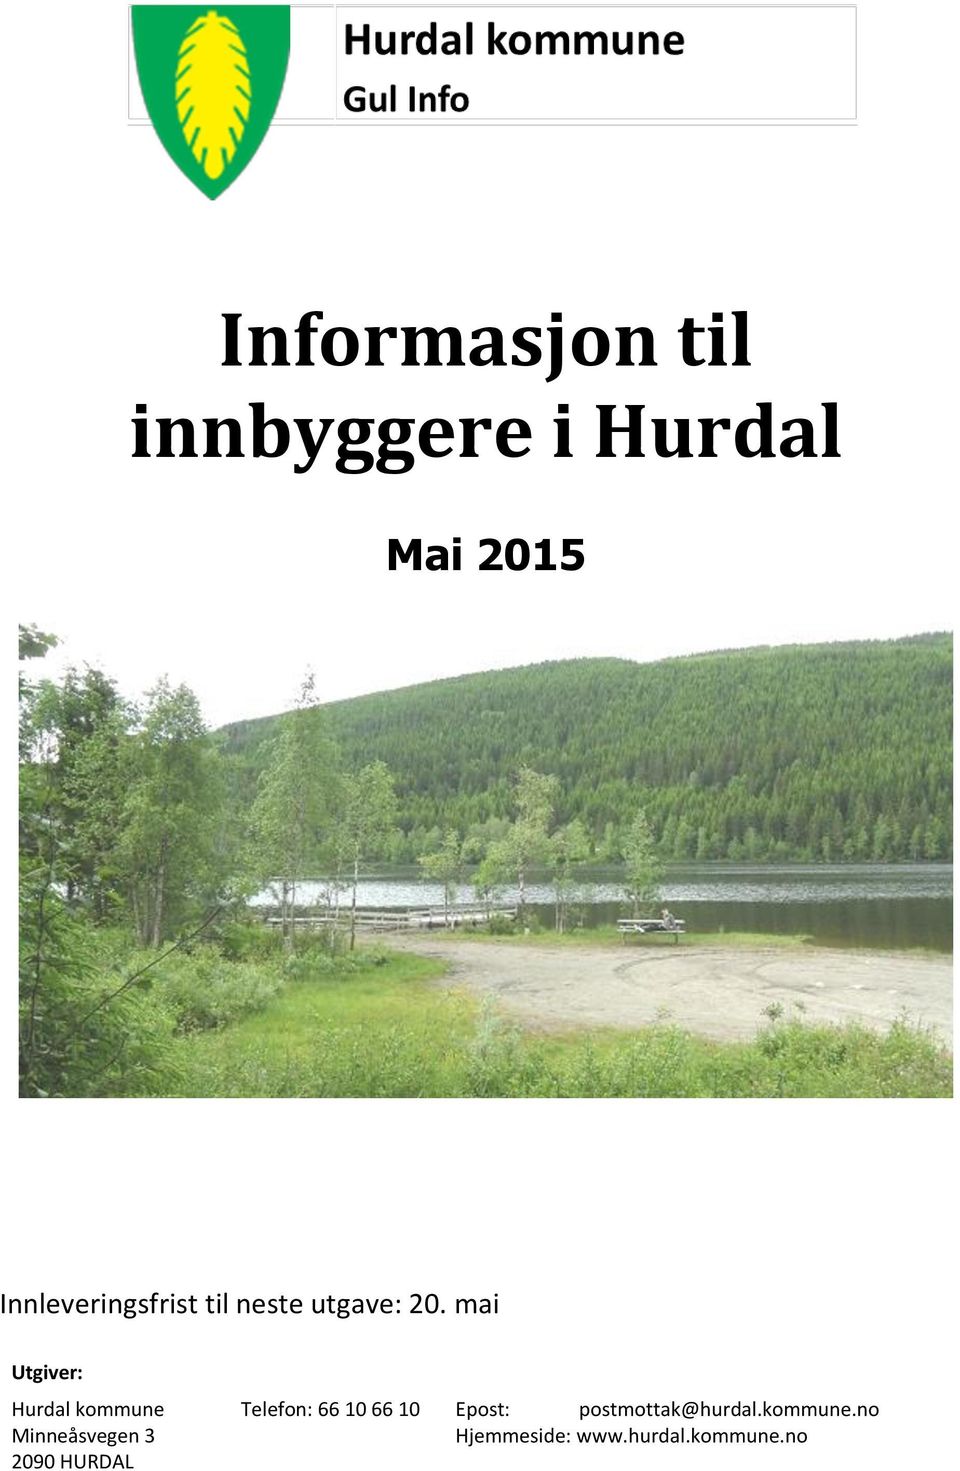 mai Utgiver: Hurdal kommune Minneåsvegen 3 2090 HURDAL